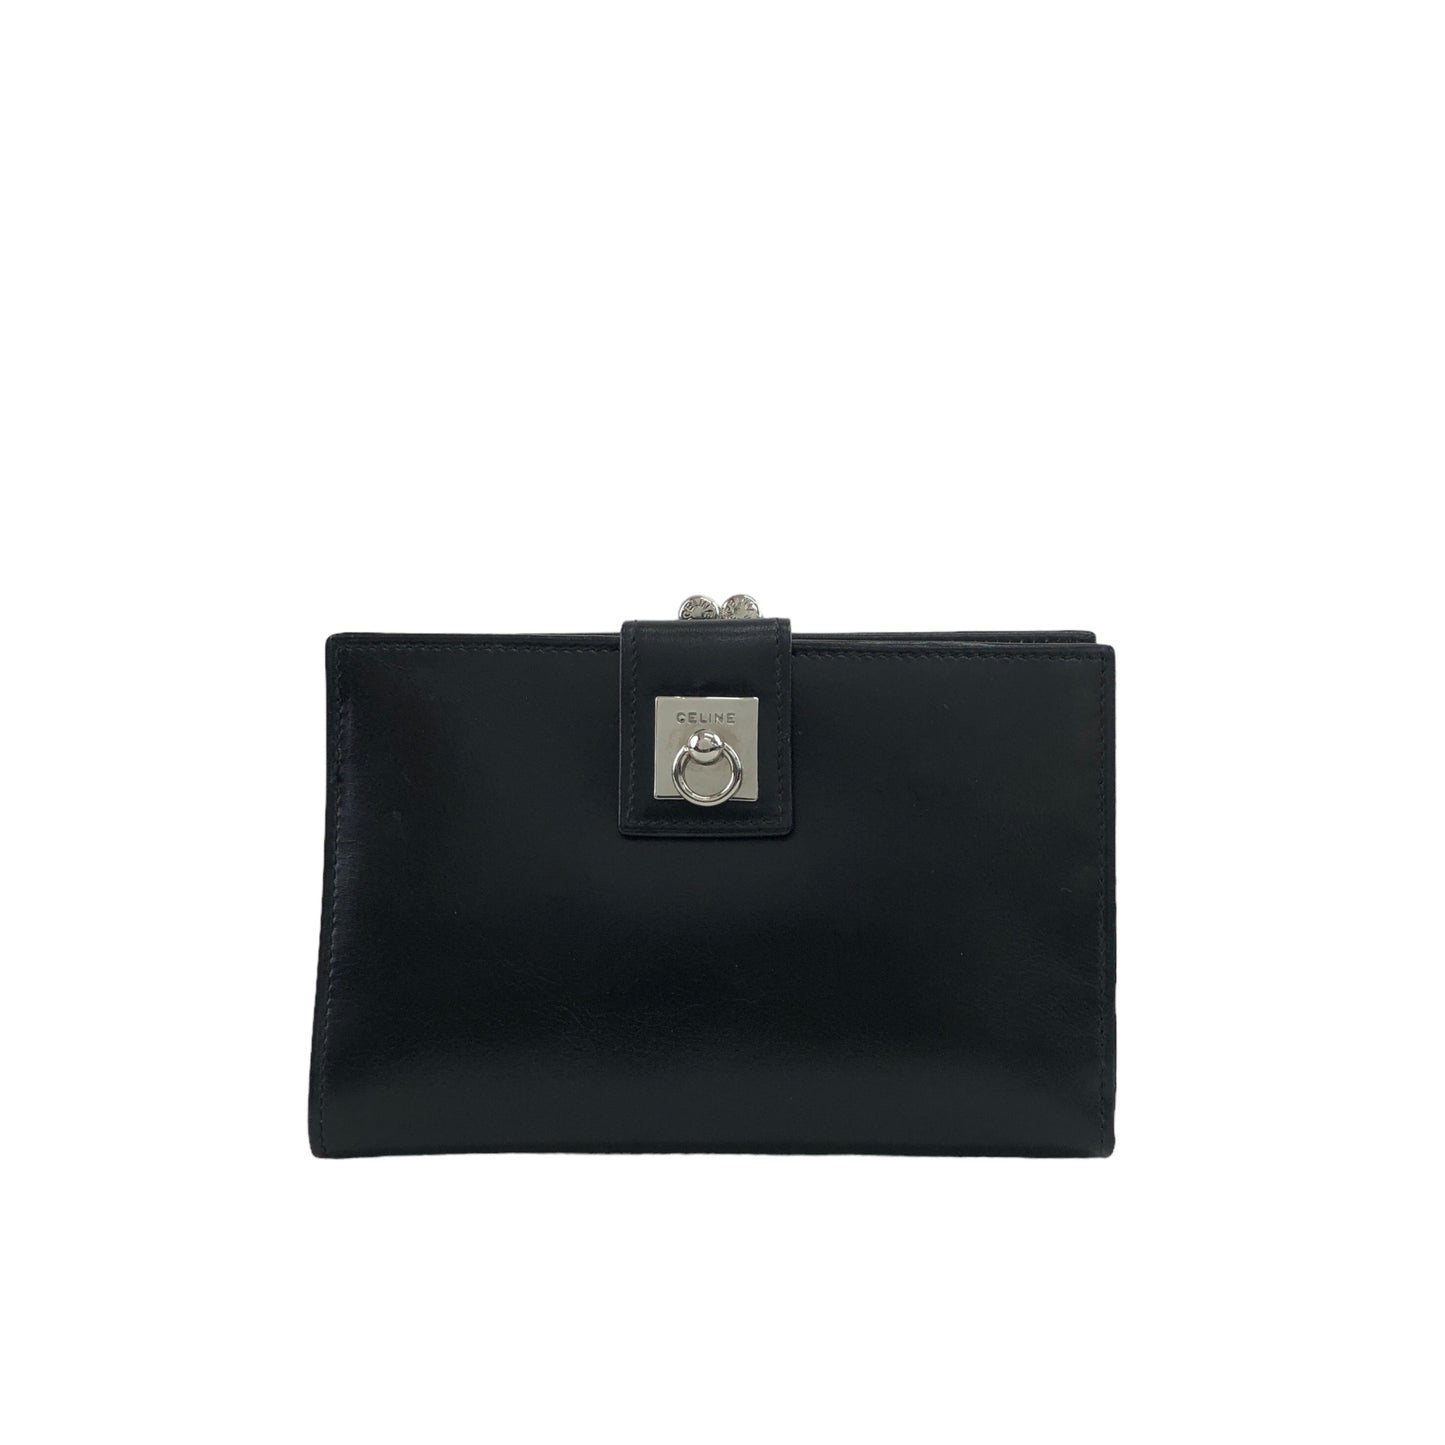 CELINE Gancini  Leather Metal Clasp Folded Wallet Black Vintage pk72c5